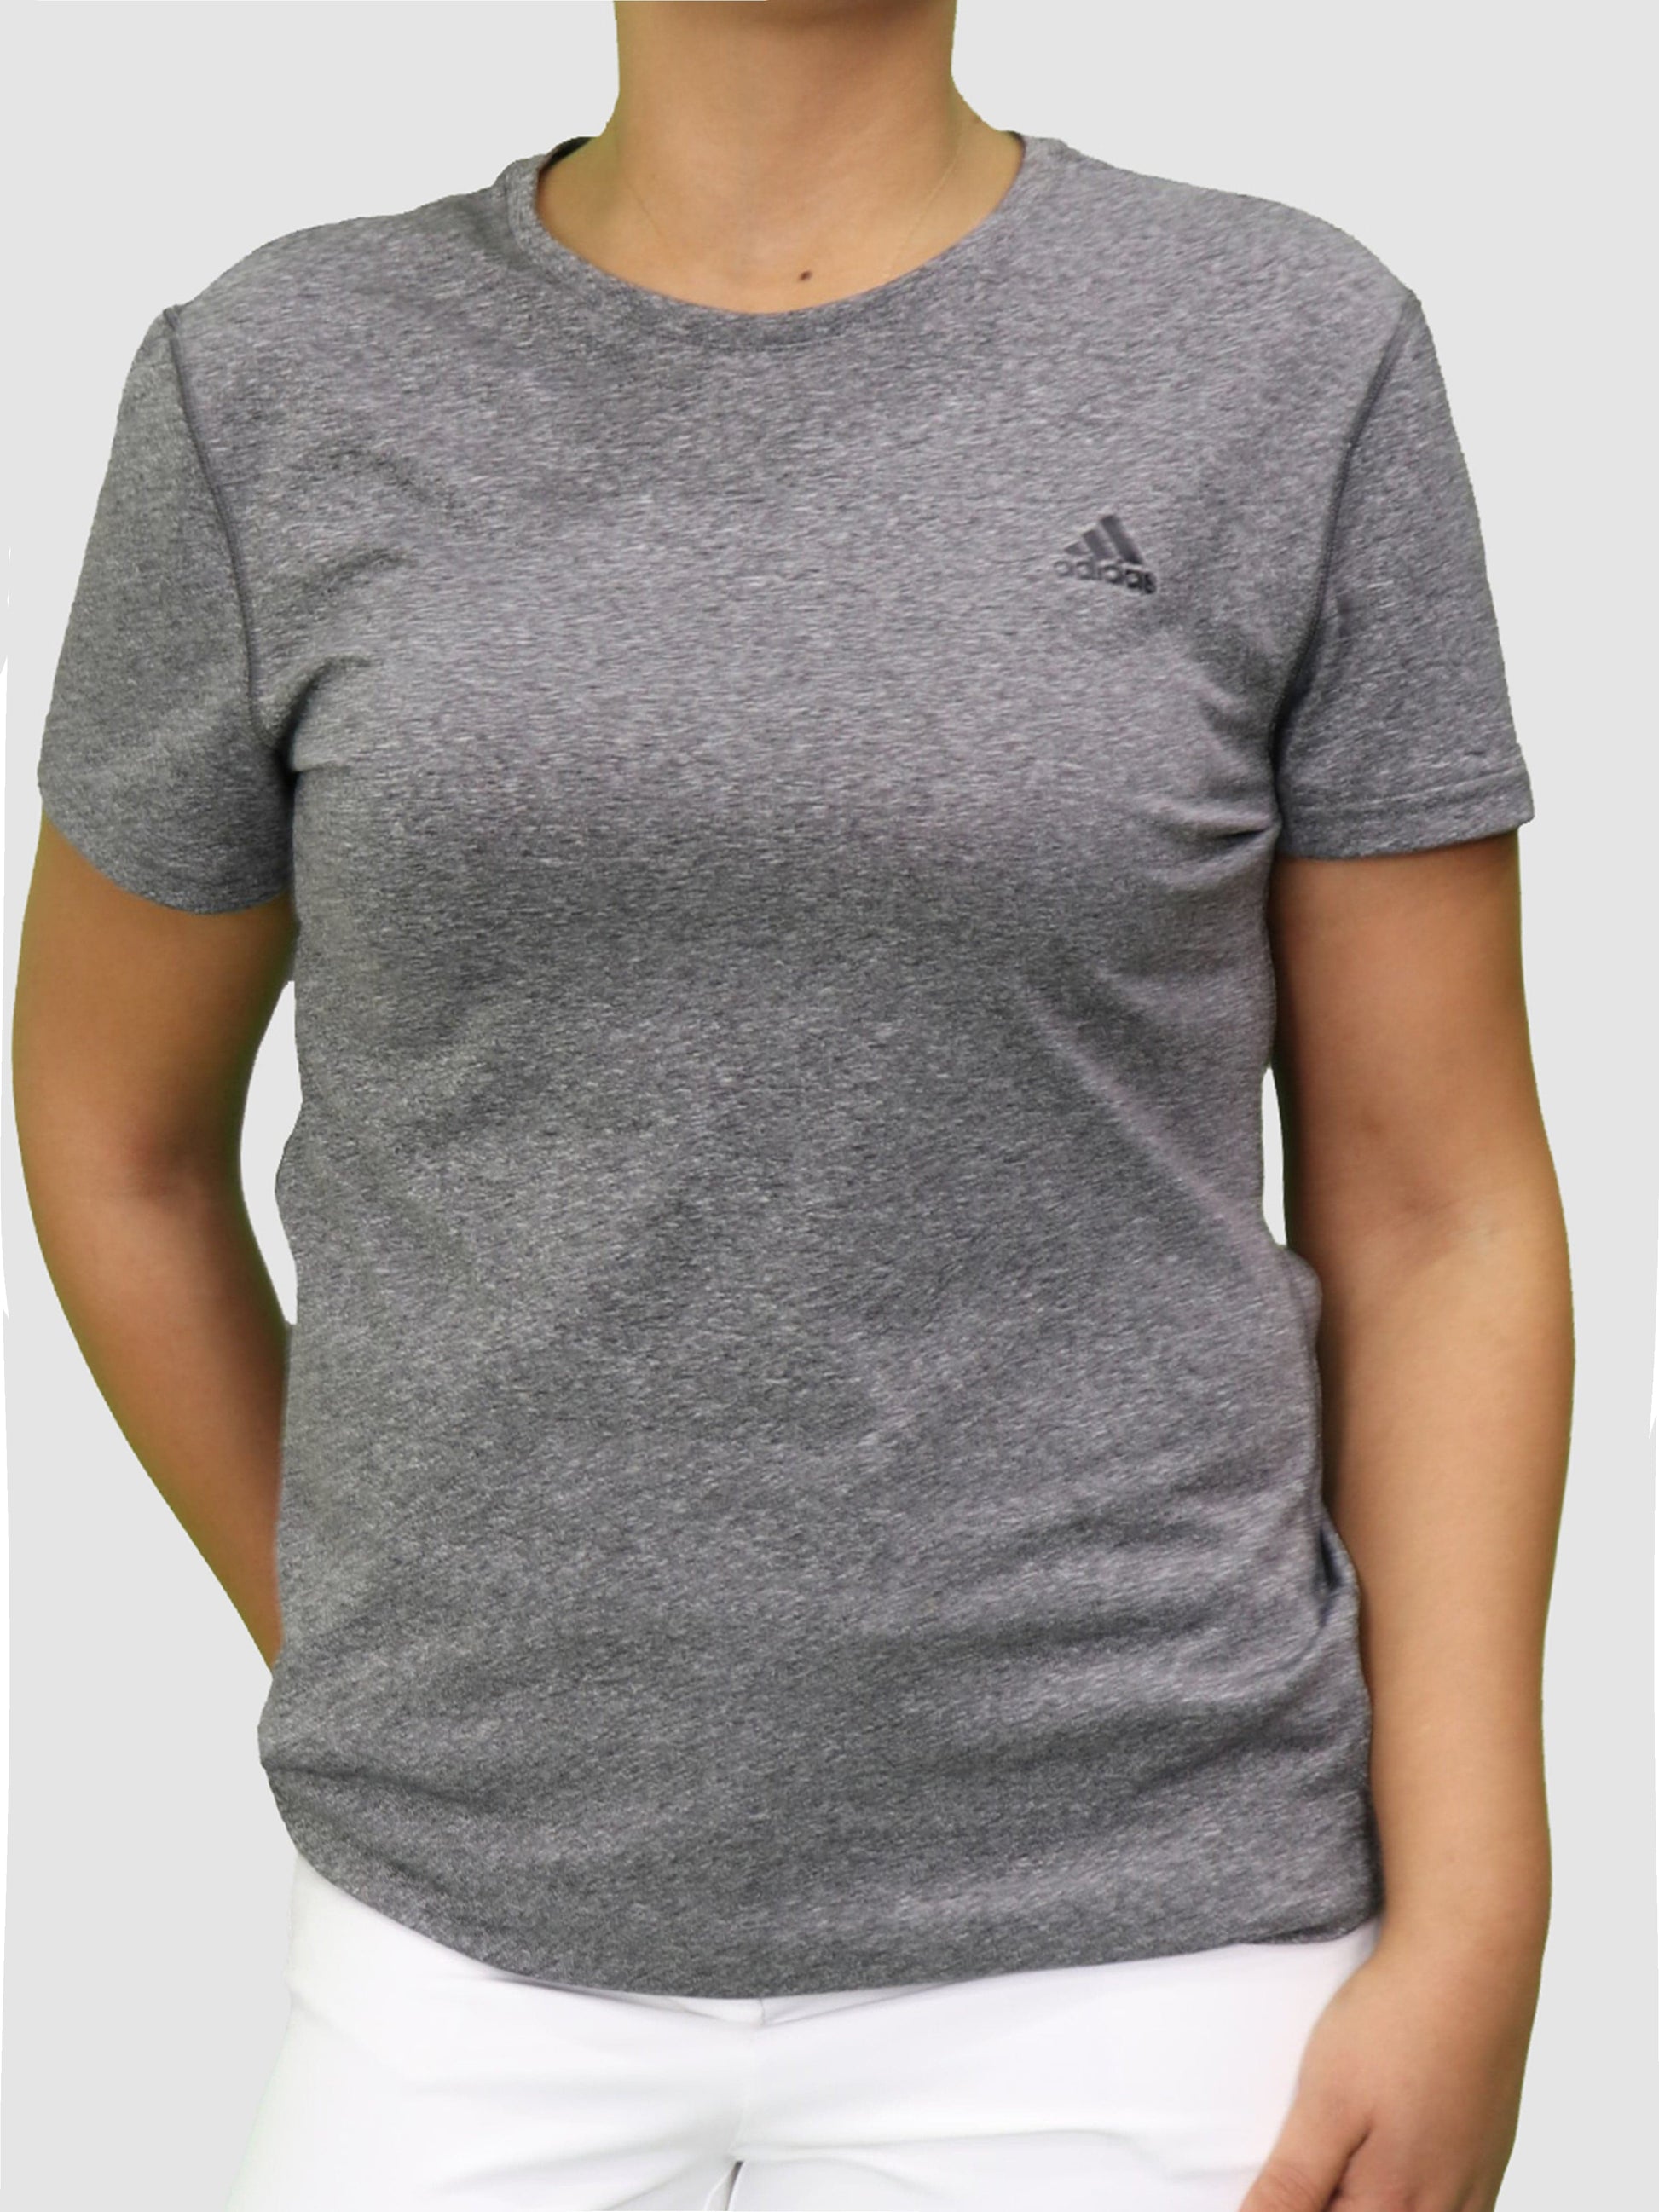 ADIDAS Womens sports Large / Grey Round Neck Short Sleeve T-Shirt